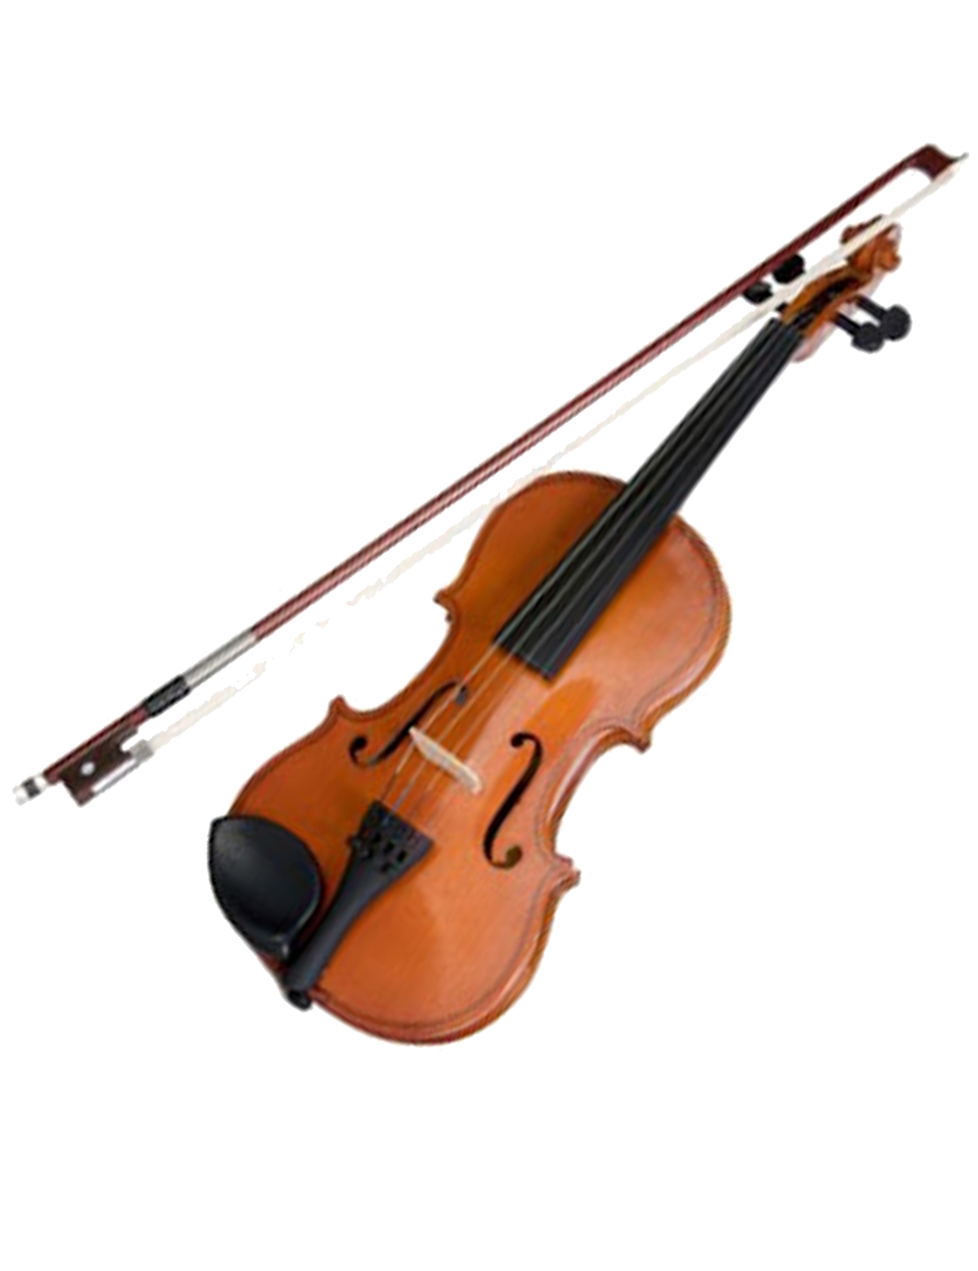 Violon et archet, instrument de musique